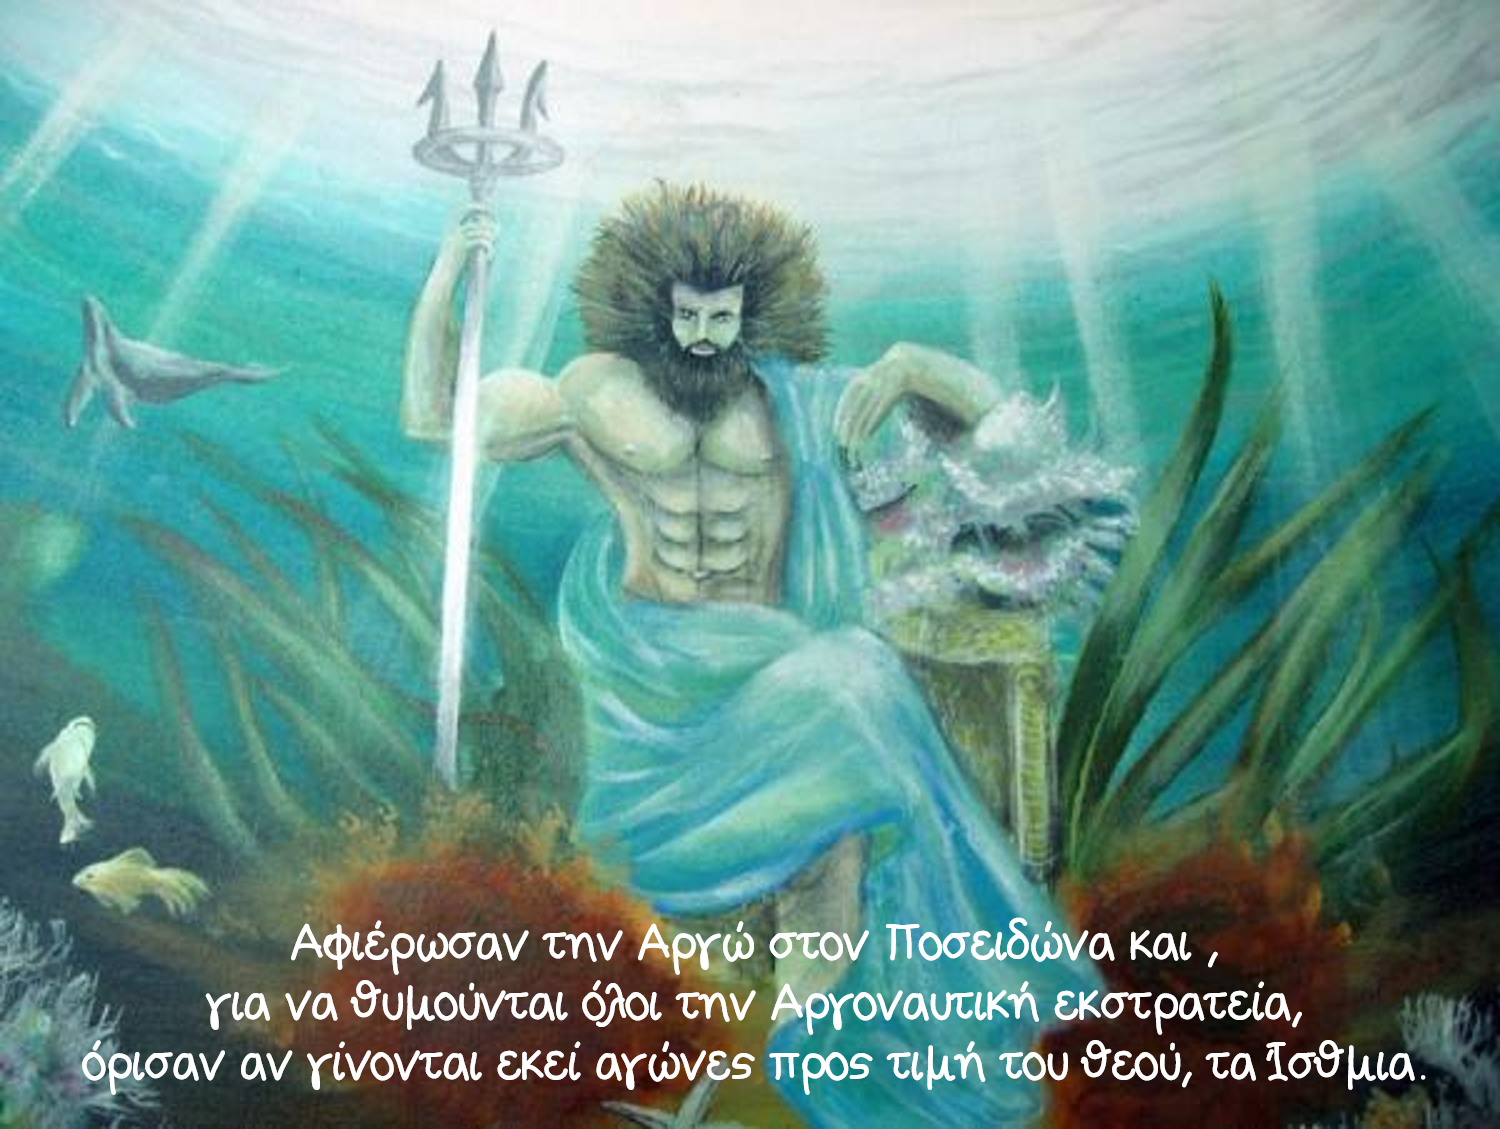 Мифология бог моря. Нептун Бог морей. Нептун Посейдон мифология. Посейдон морской царь. Посейдон Бог морей.